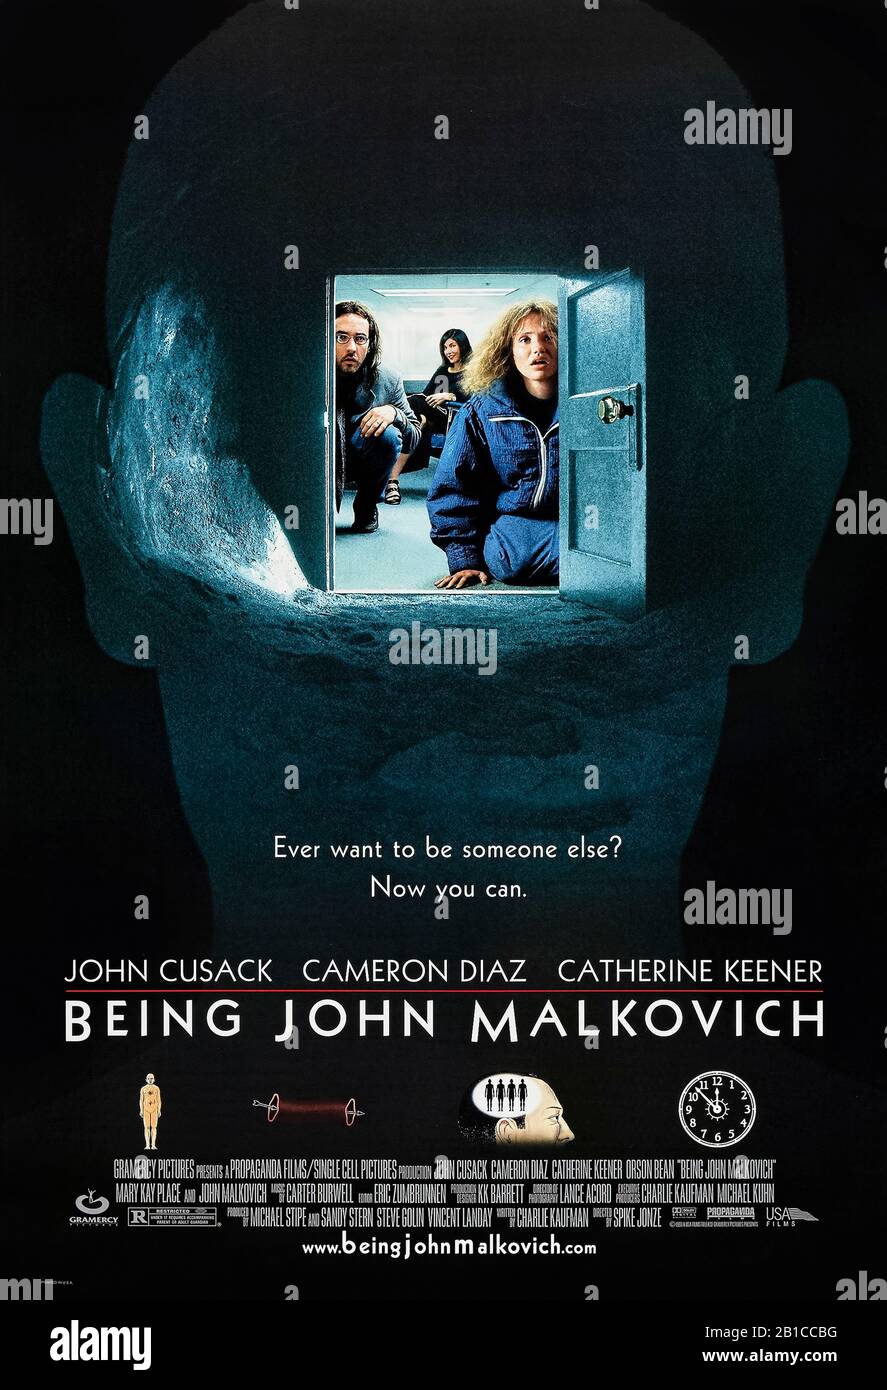 Siendo John Malkovich (1999) dirigido por Spike Jonze y protagonizado por John Cusack, Cameron Diaz, Catherine Keener y John Malkovich. Comedia estrafalaria en la que un marioneta descubre un portal secreto en la cabeza de John Malkovich. Foto de stock